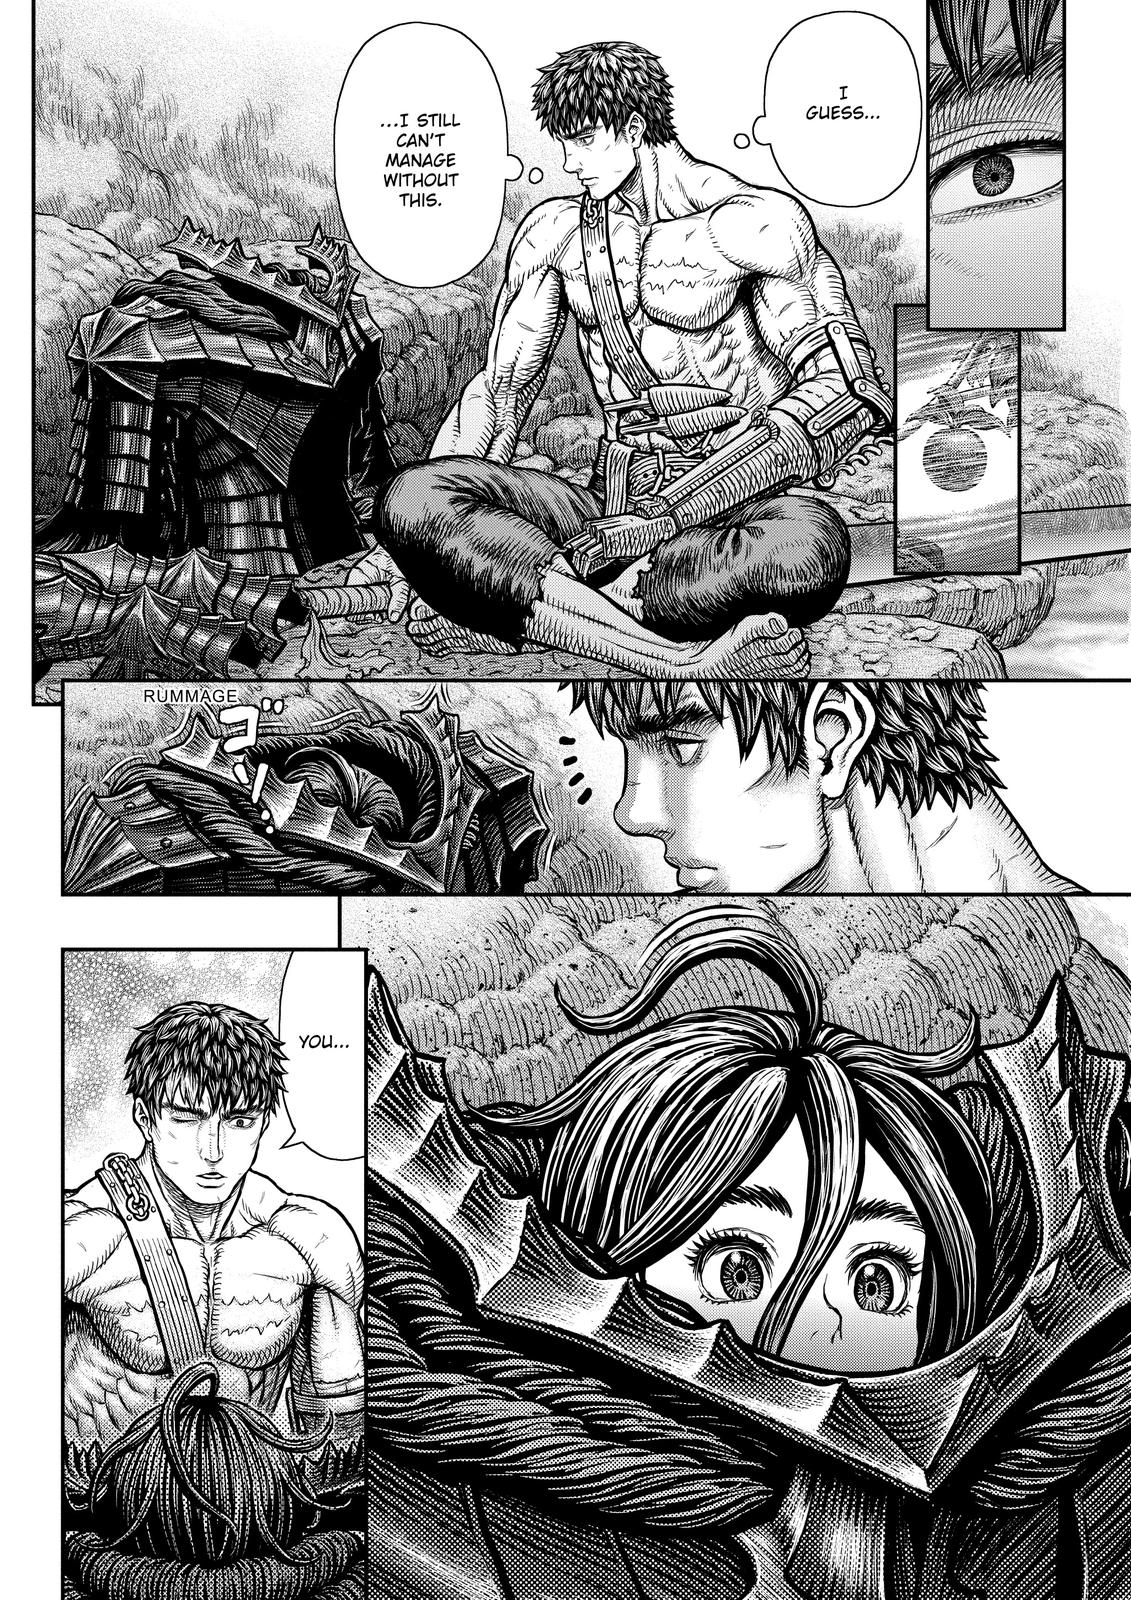 Berserk Manga Chapter 364 image 16